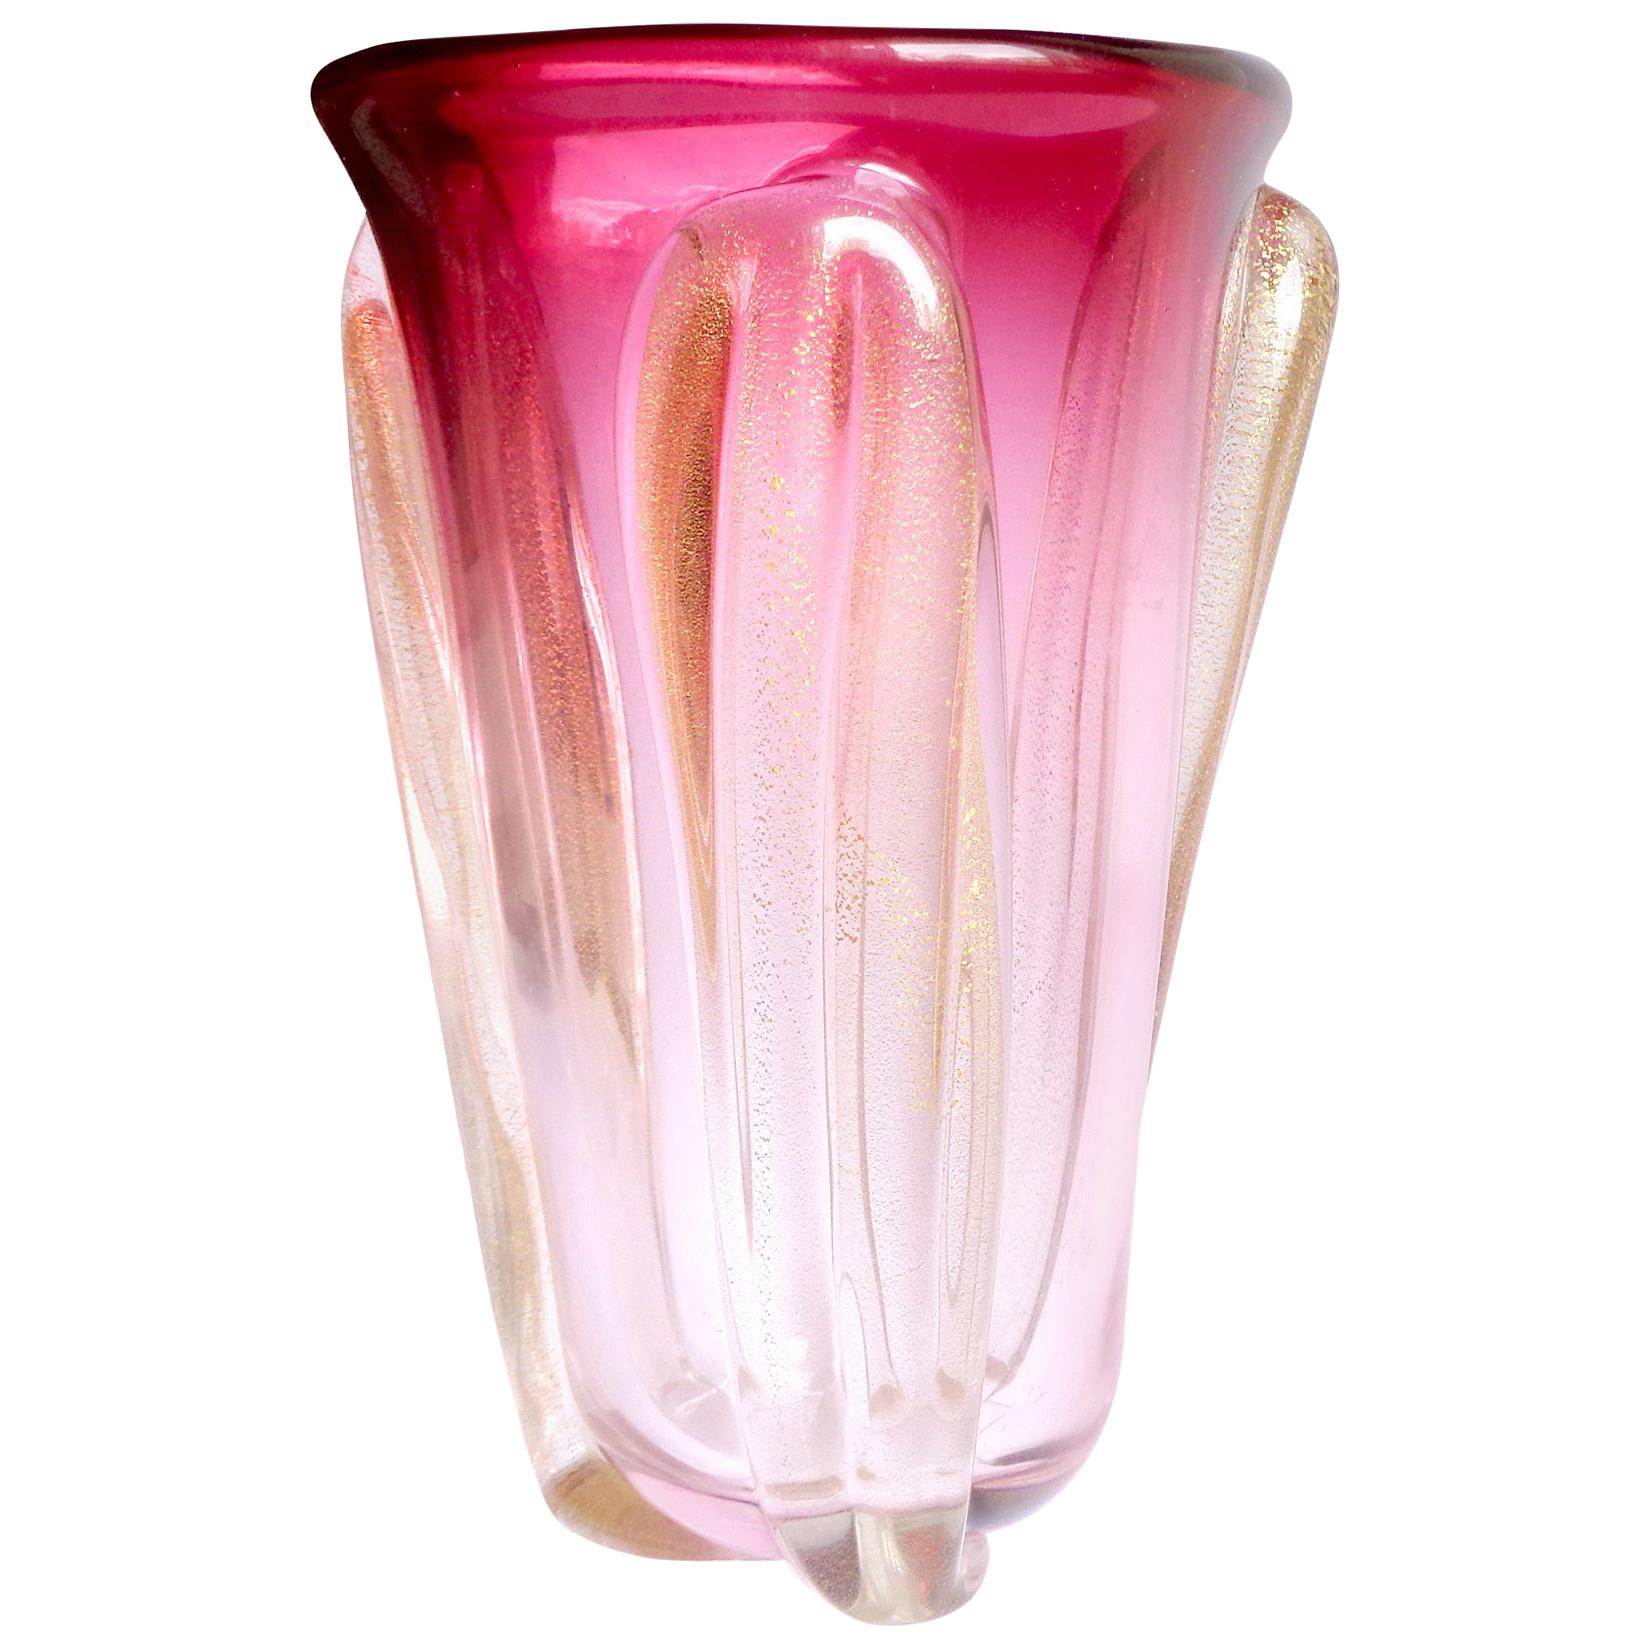 Seguso Murano Red to Pink Sommerso Gold Flecks Italian Art Glass Flower Vase